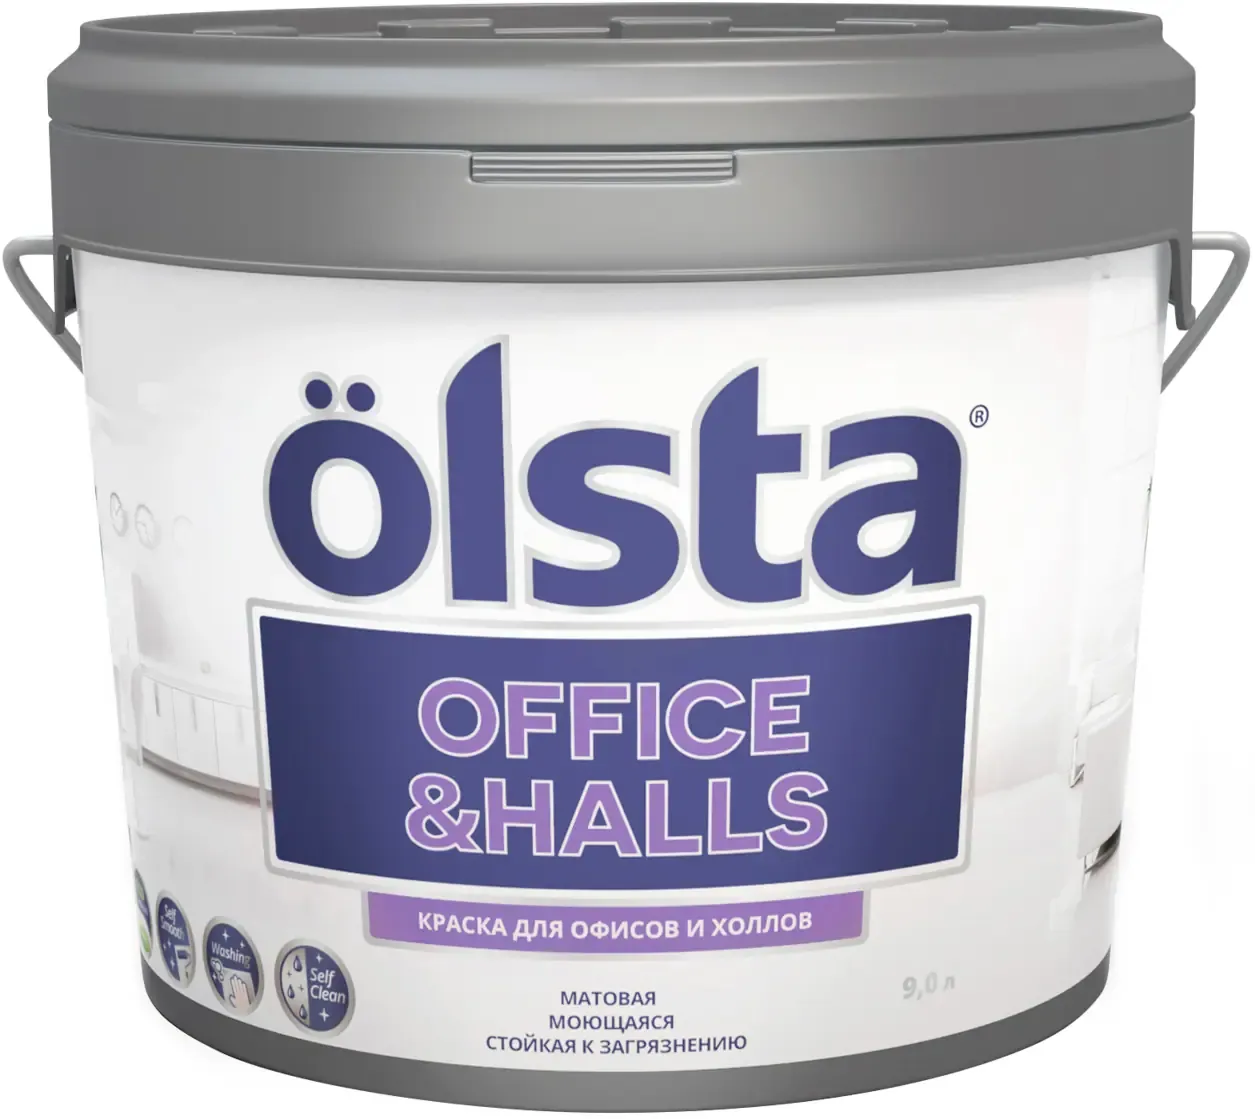 Краска для офисов и холлов Olsta Office & Halls 9 л старинная лазурная база A №111A Vintage Blue шелковисто матовая 00